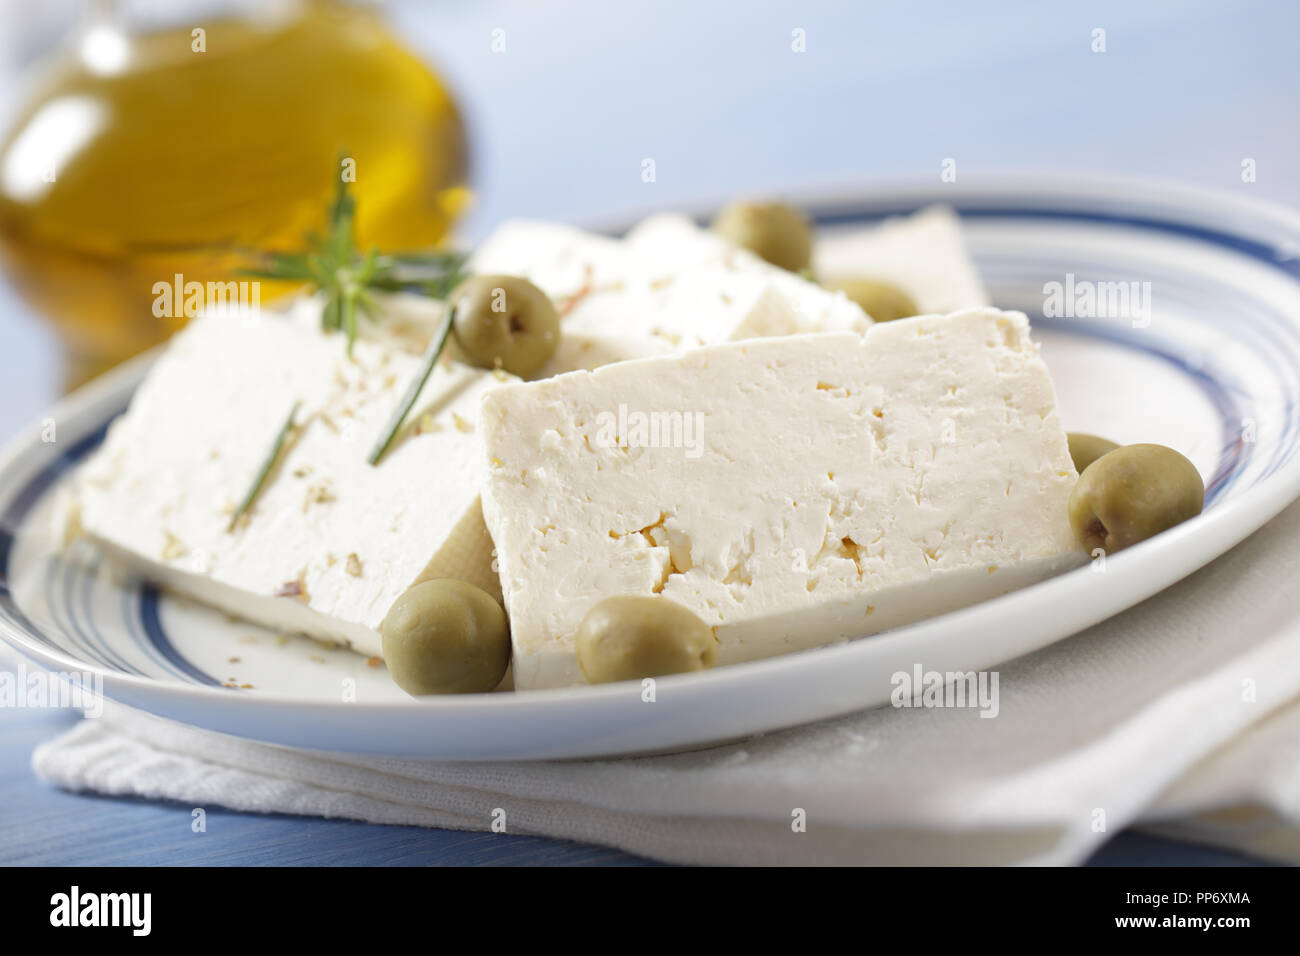 Tranches de fromage feta aux olives vertes et de l'huile d'olive Banque D'Images